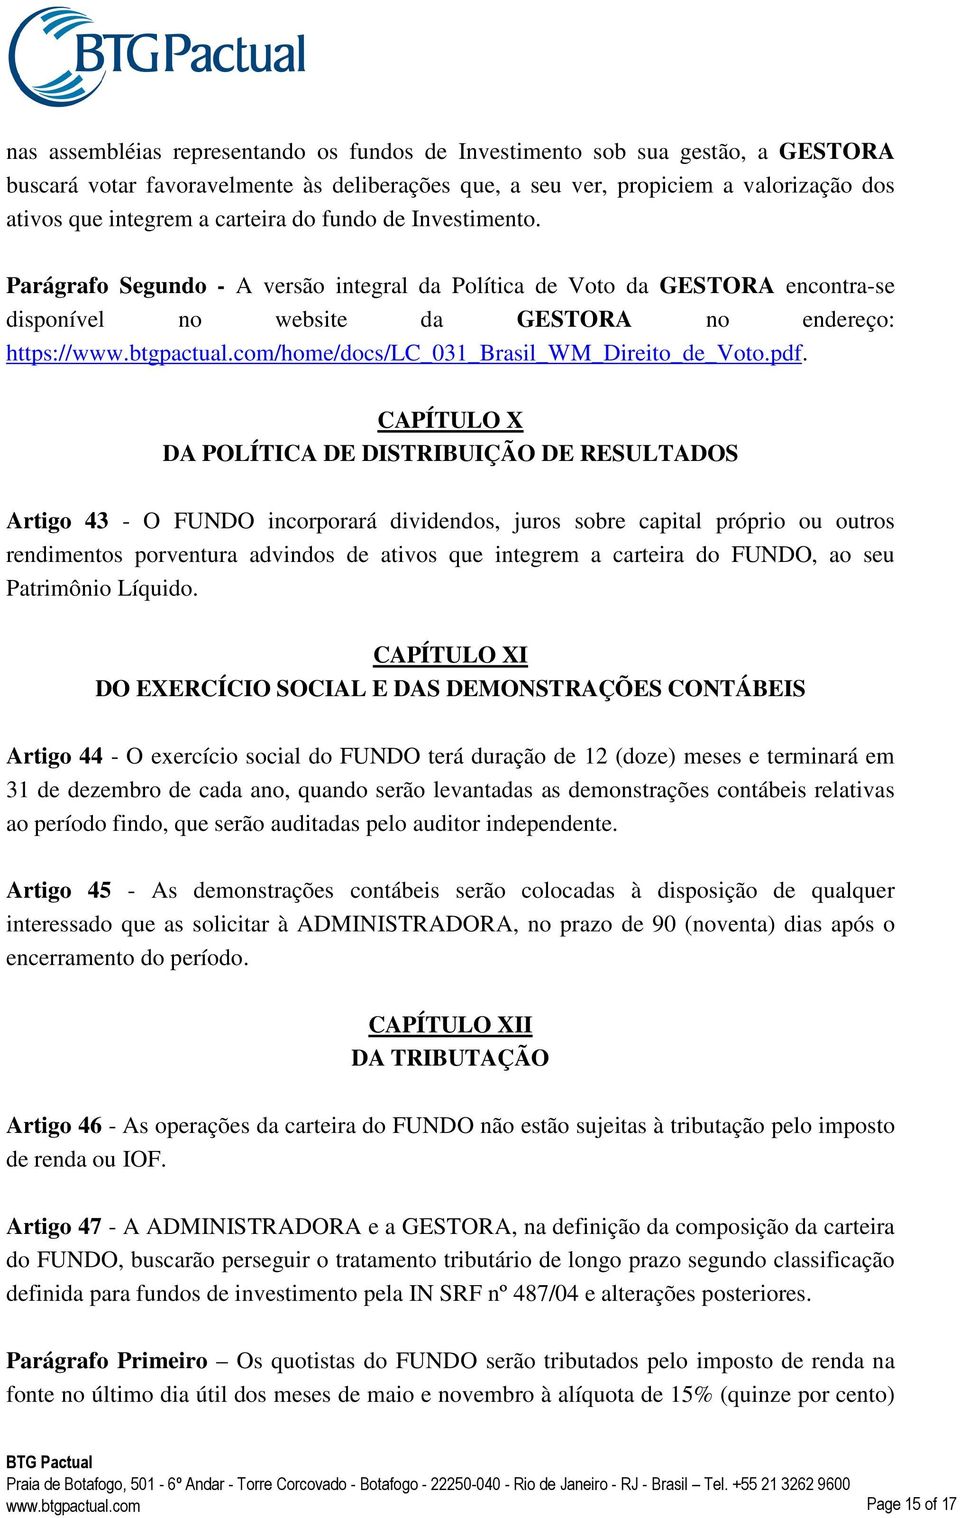 com/home/docs/lc_031_brasil_wm_direito_de_voto.pdf.